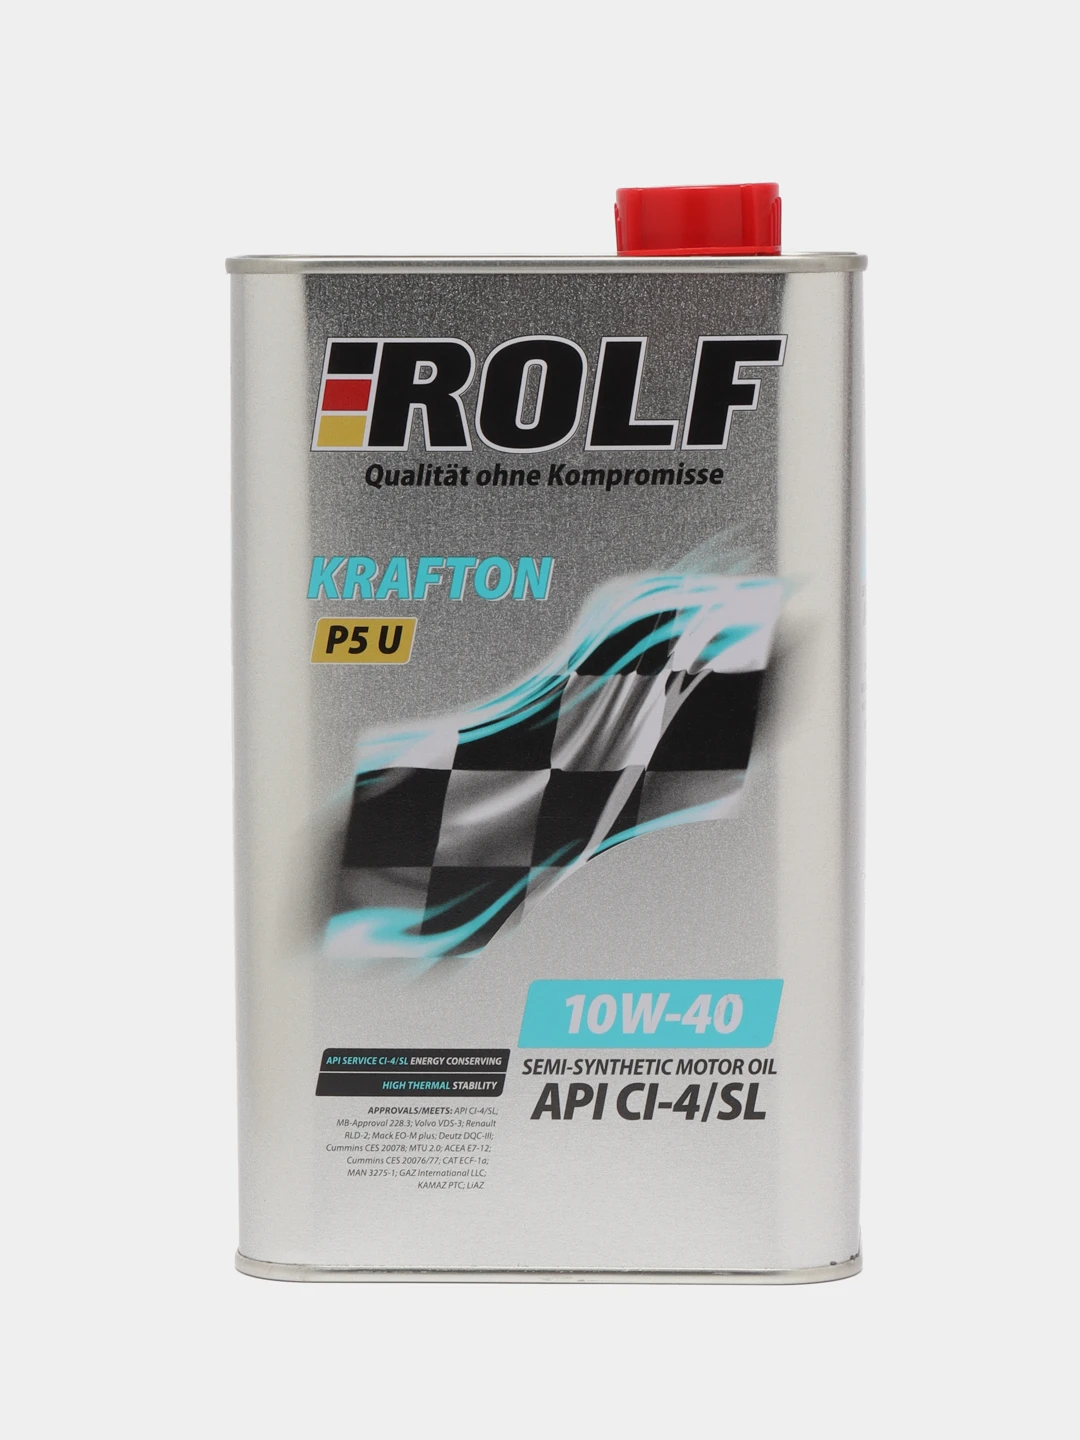 Rolf Krafton p5 10w 40. Rolf Krafton p5 u 10w-40. Rolf Krafton p5 u 10w-40, 60 л. Rolf Krafton p5 u 10/40 API ci-4/SL.